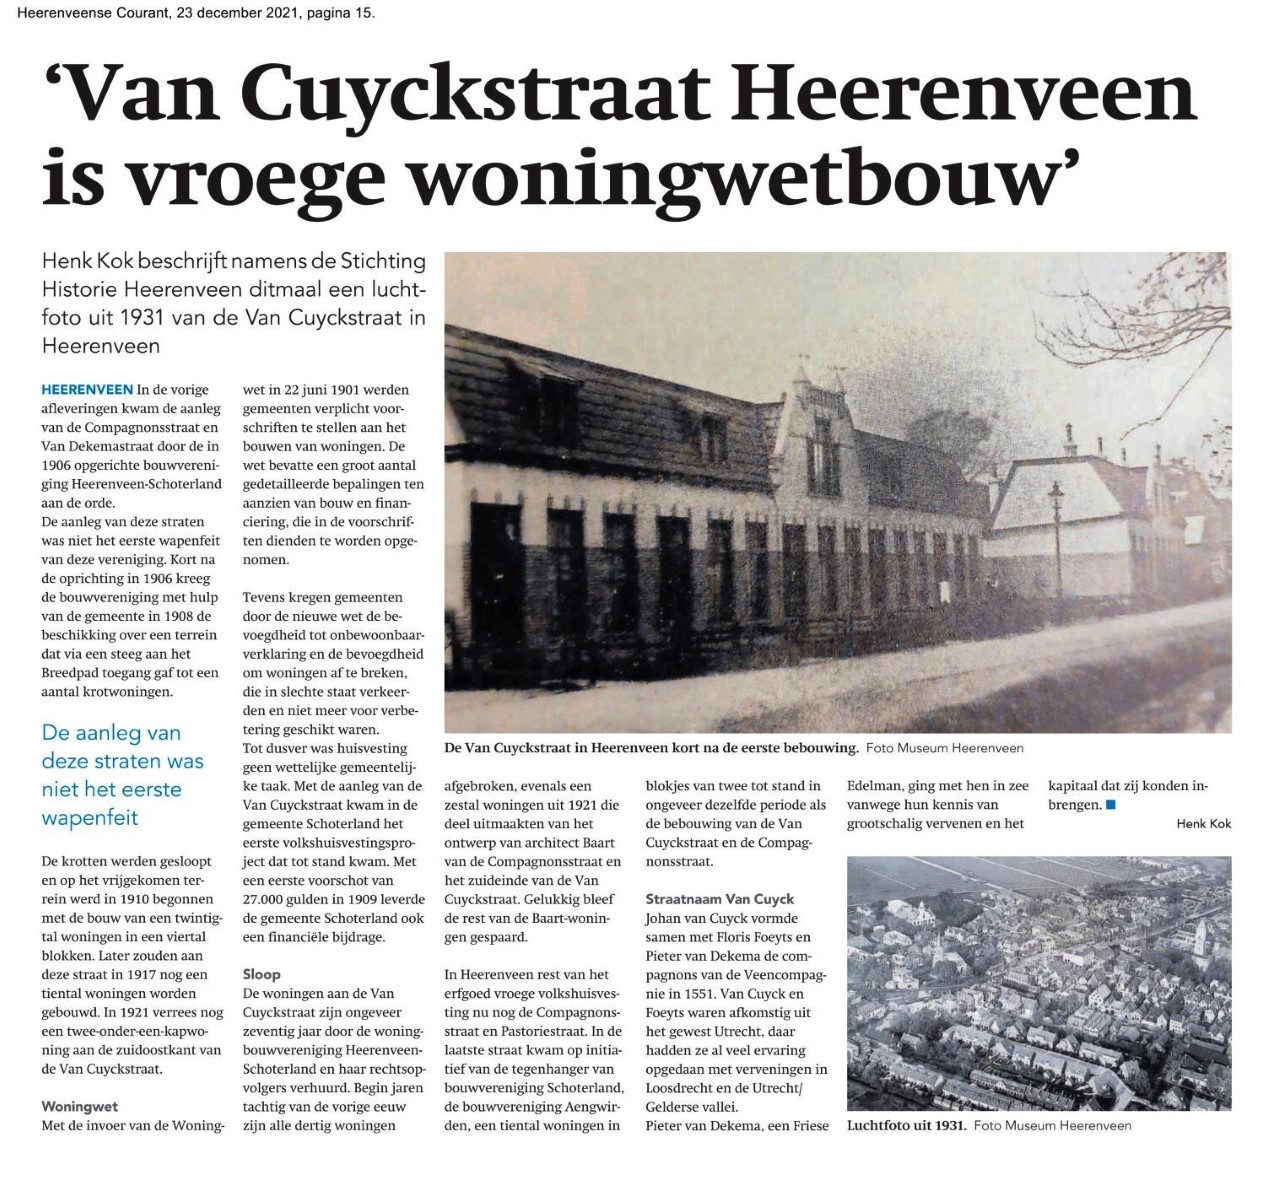 9936 2021 12 23 Van Cuyckstraat Heerenveen is vroege woningwetbouw